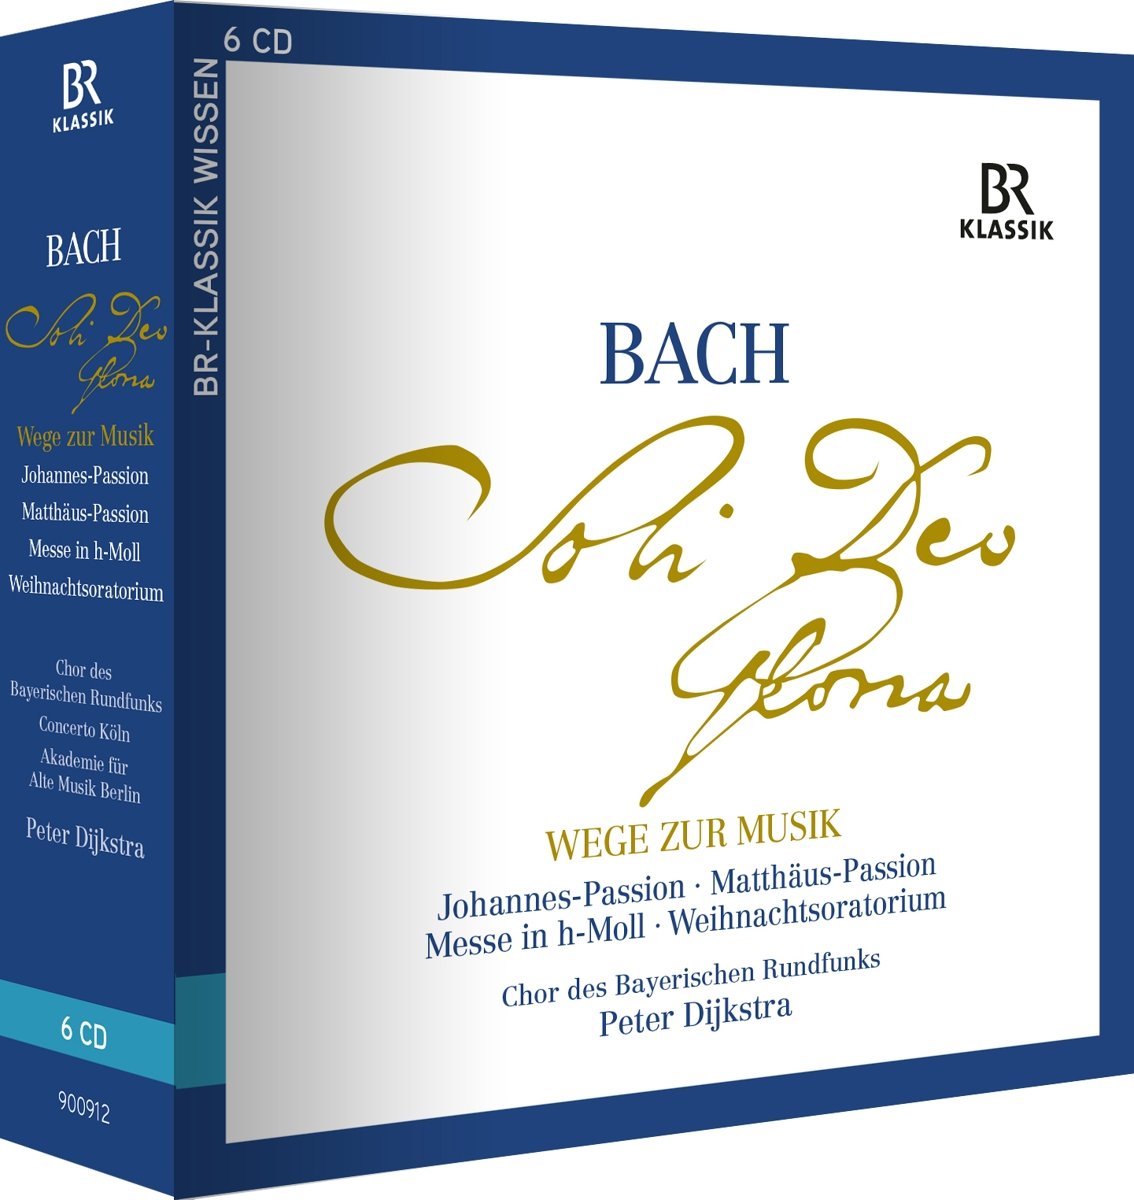 Audio Cd Johann Sebastian Bach - Soli Deo Gloria (6 Cd) NUOVO SIGILLATO, EDIZIONE DEL 24/08/2018 SUBITO DISPONIBILE